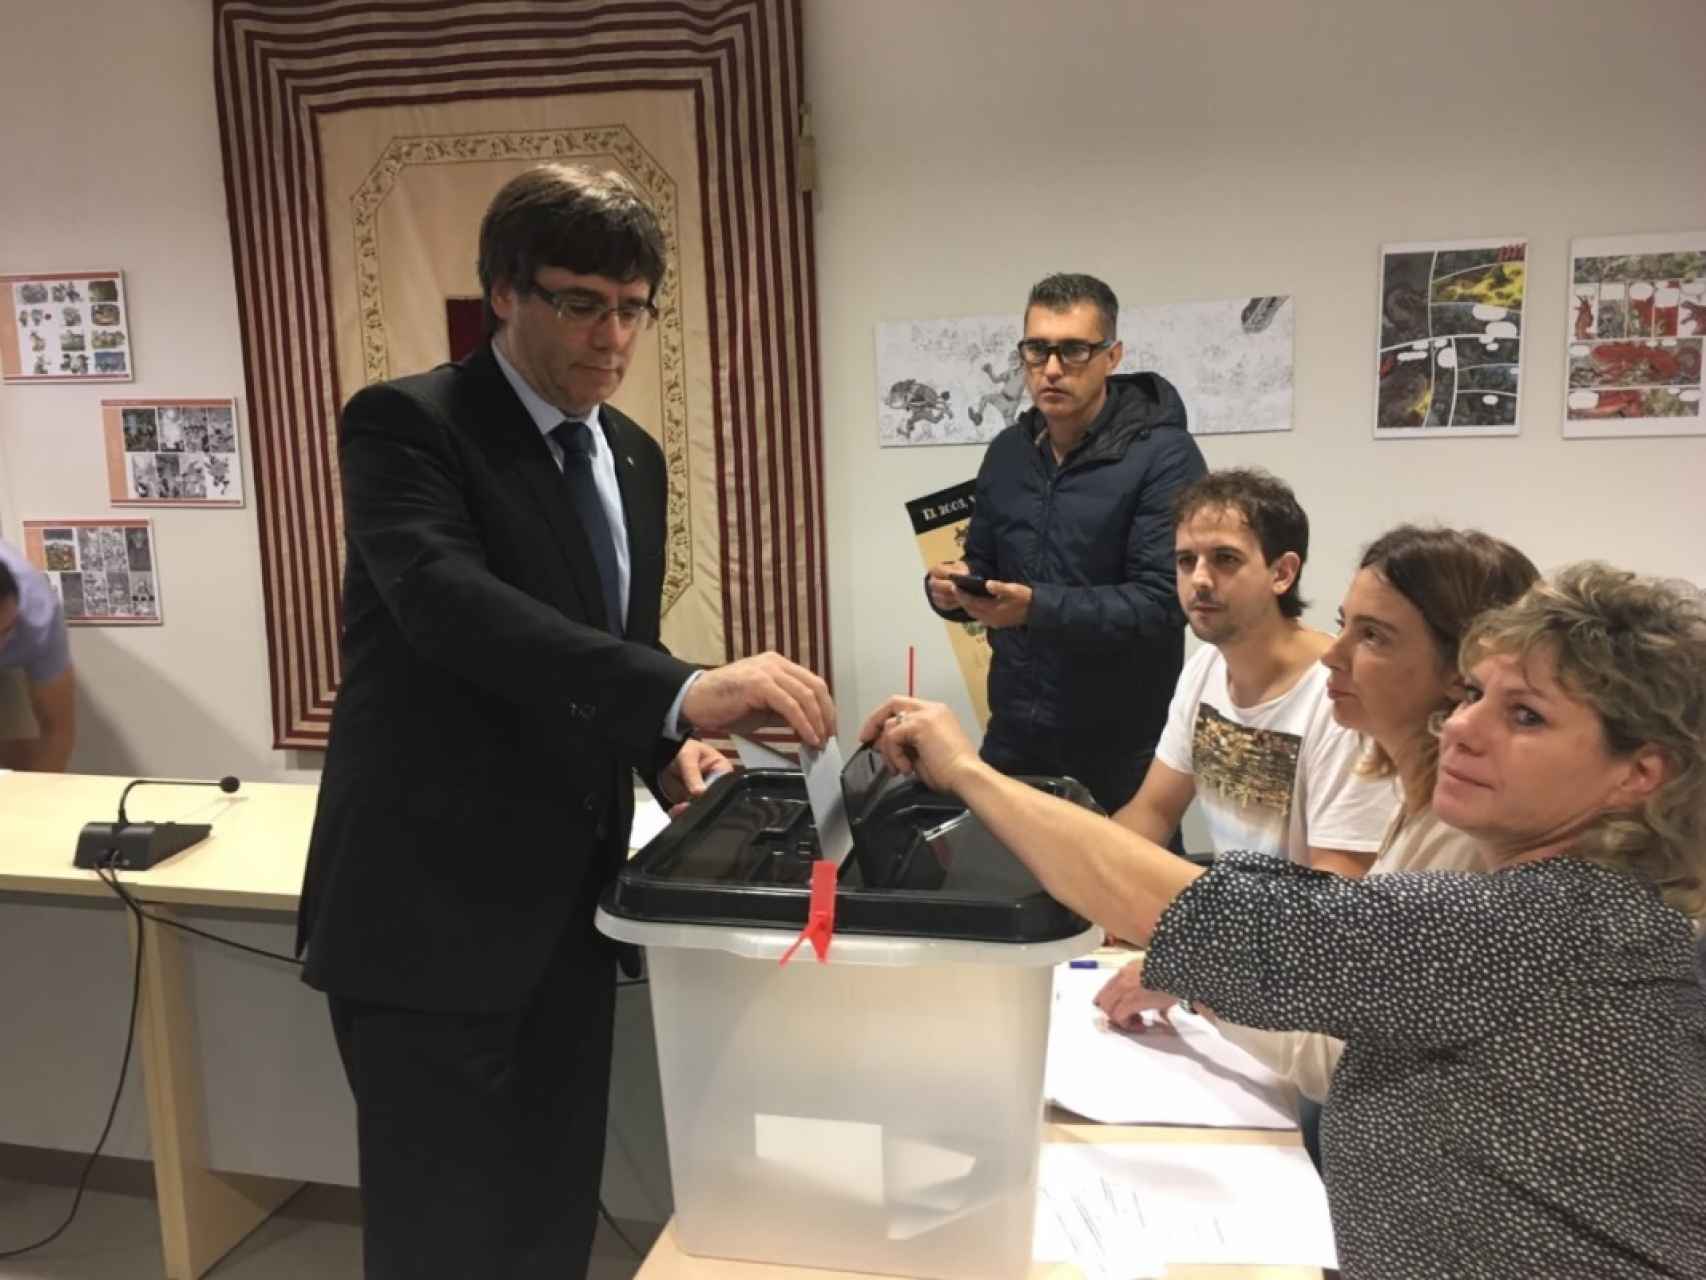 Imagen de Puigdemont votando en un colegio cercano al suyo el pasado 1-O.